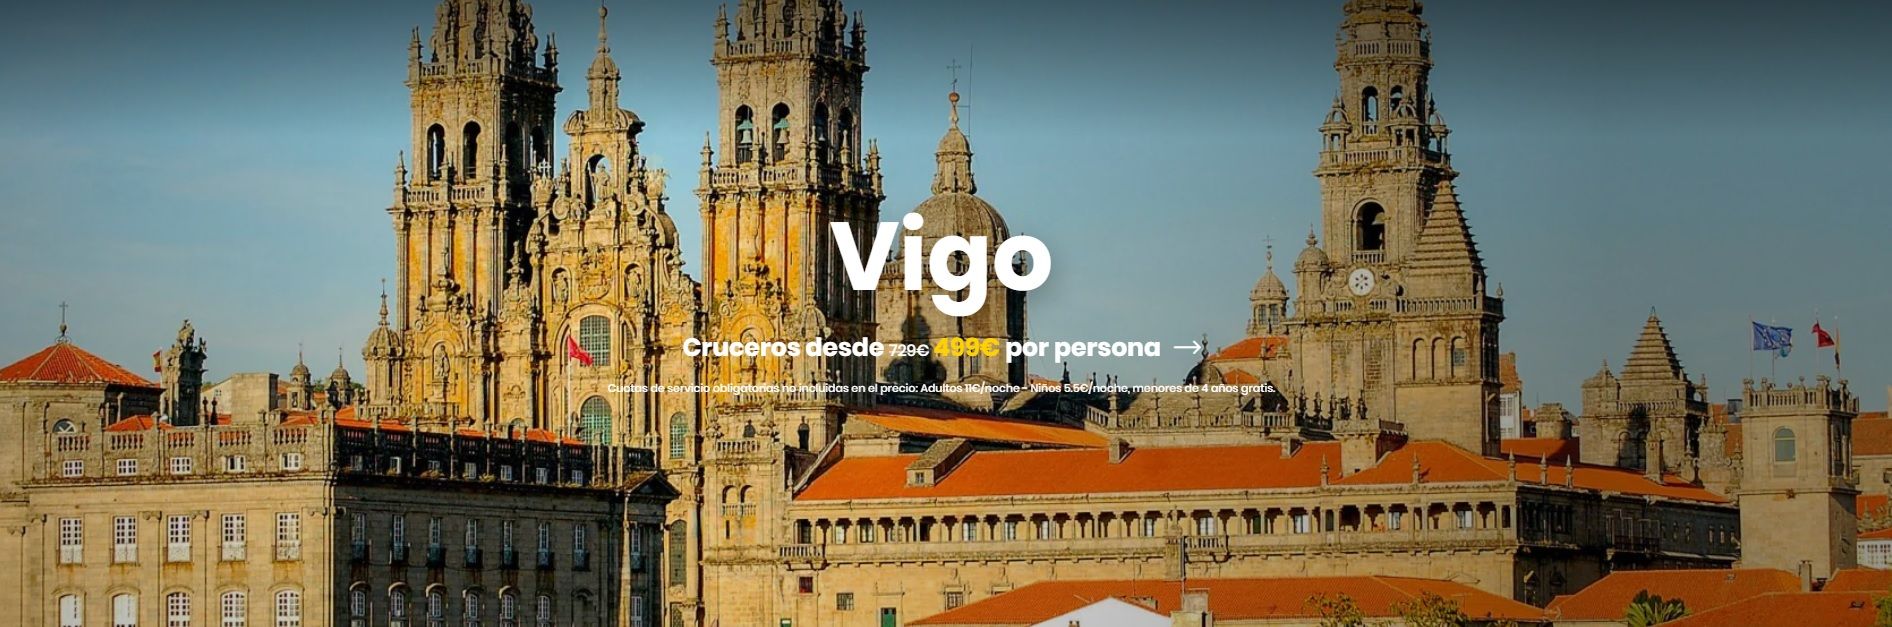 Costa Cruceros ilustra su promoción de Vigo con una imagen de la Catedral de Santiago.